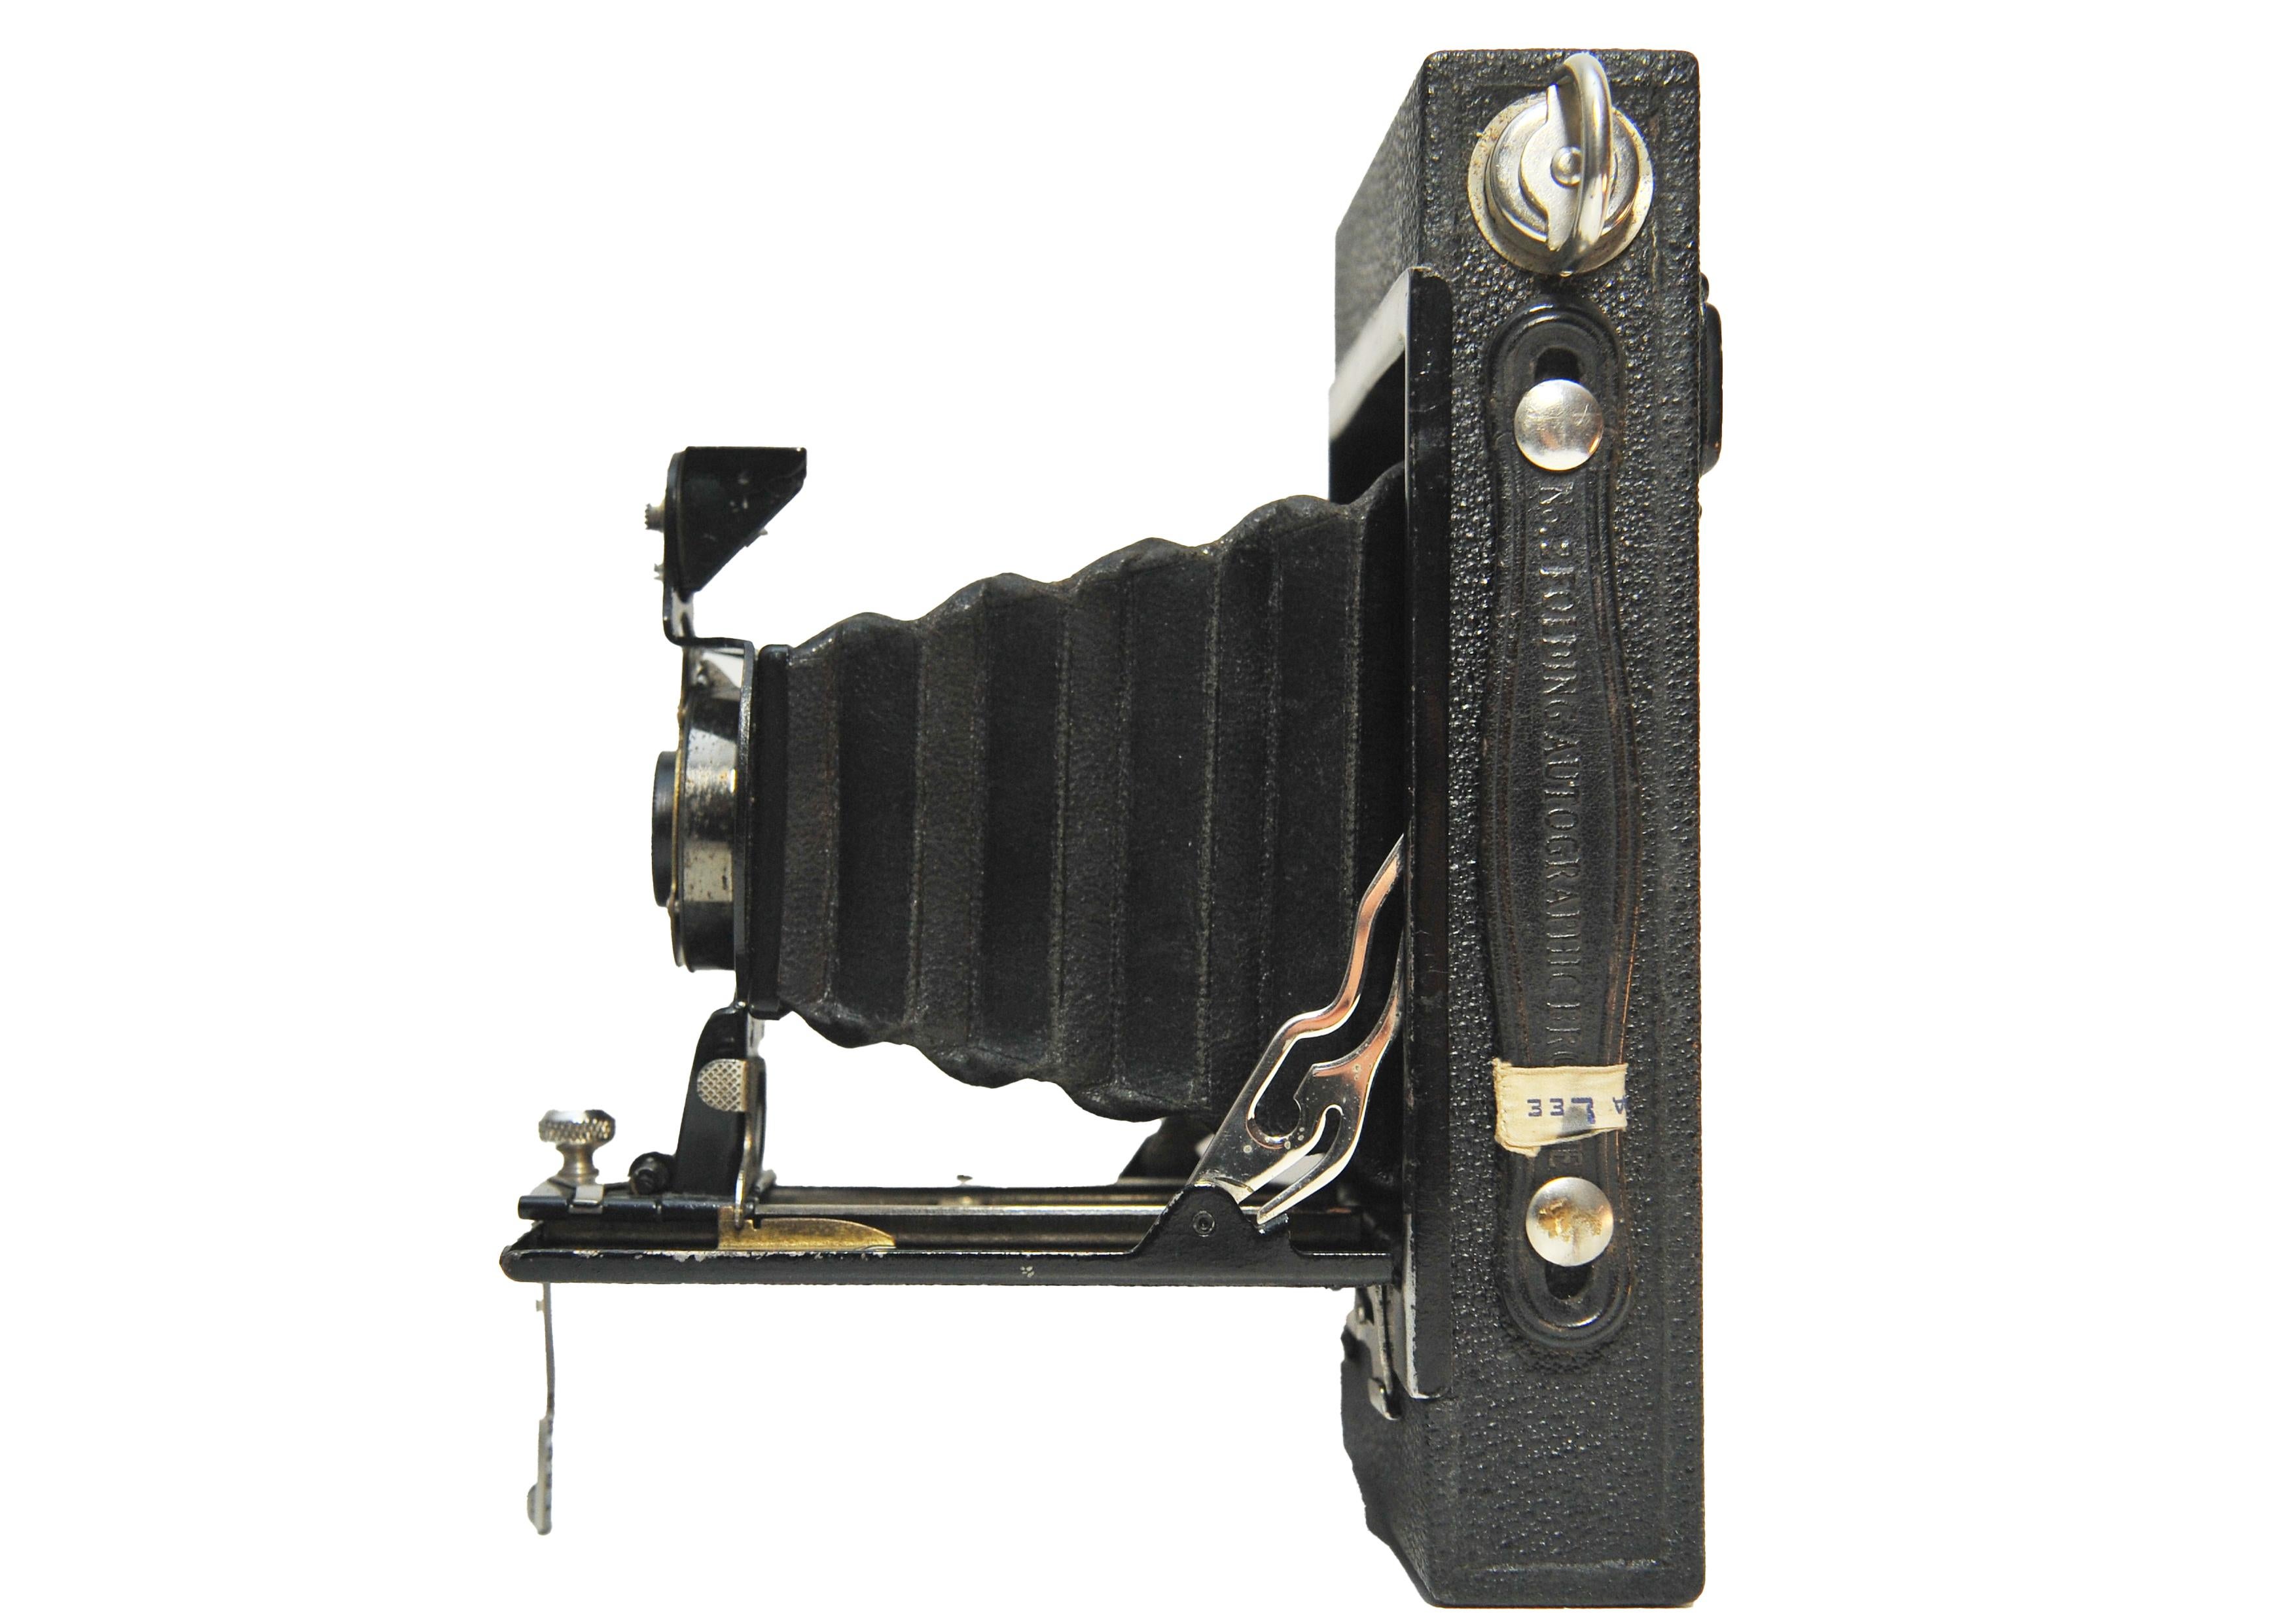 Eastman Kodak No 2 Foldes Autographic Brownie 120 Film Bellow Camera

Il s'agit d'un appareil photo brownie autographique pliant Kodak No 2 datant de 1915-1917. Les boîtes à bords carrés ont été remplacées par des boîtes courbes en 1917.

Fabriqué